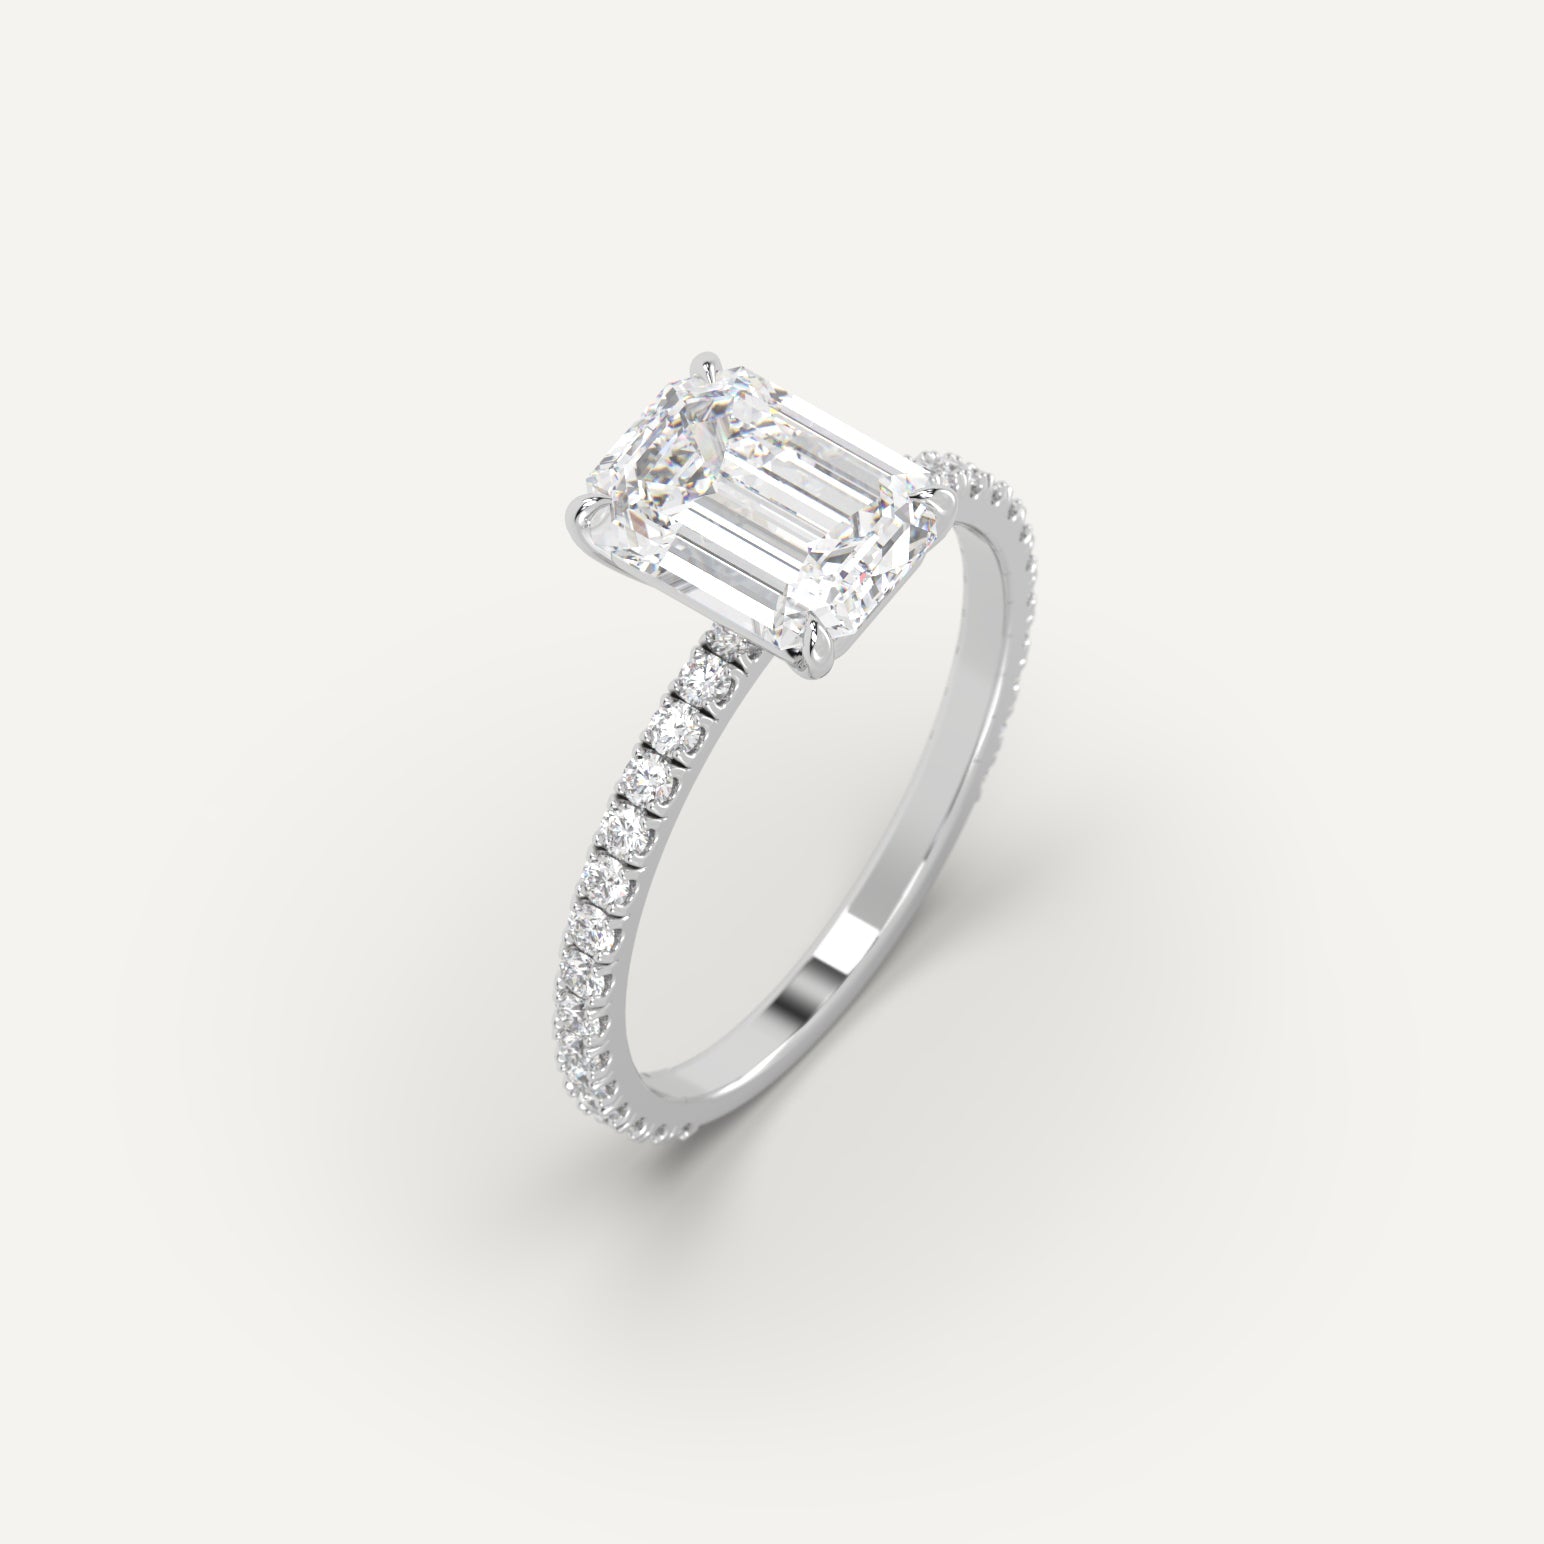 2 carat Emerald Cut Engagement Ring in 950 Platinum